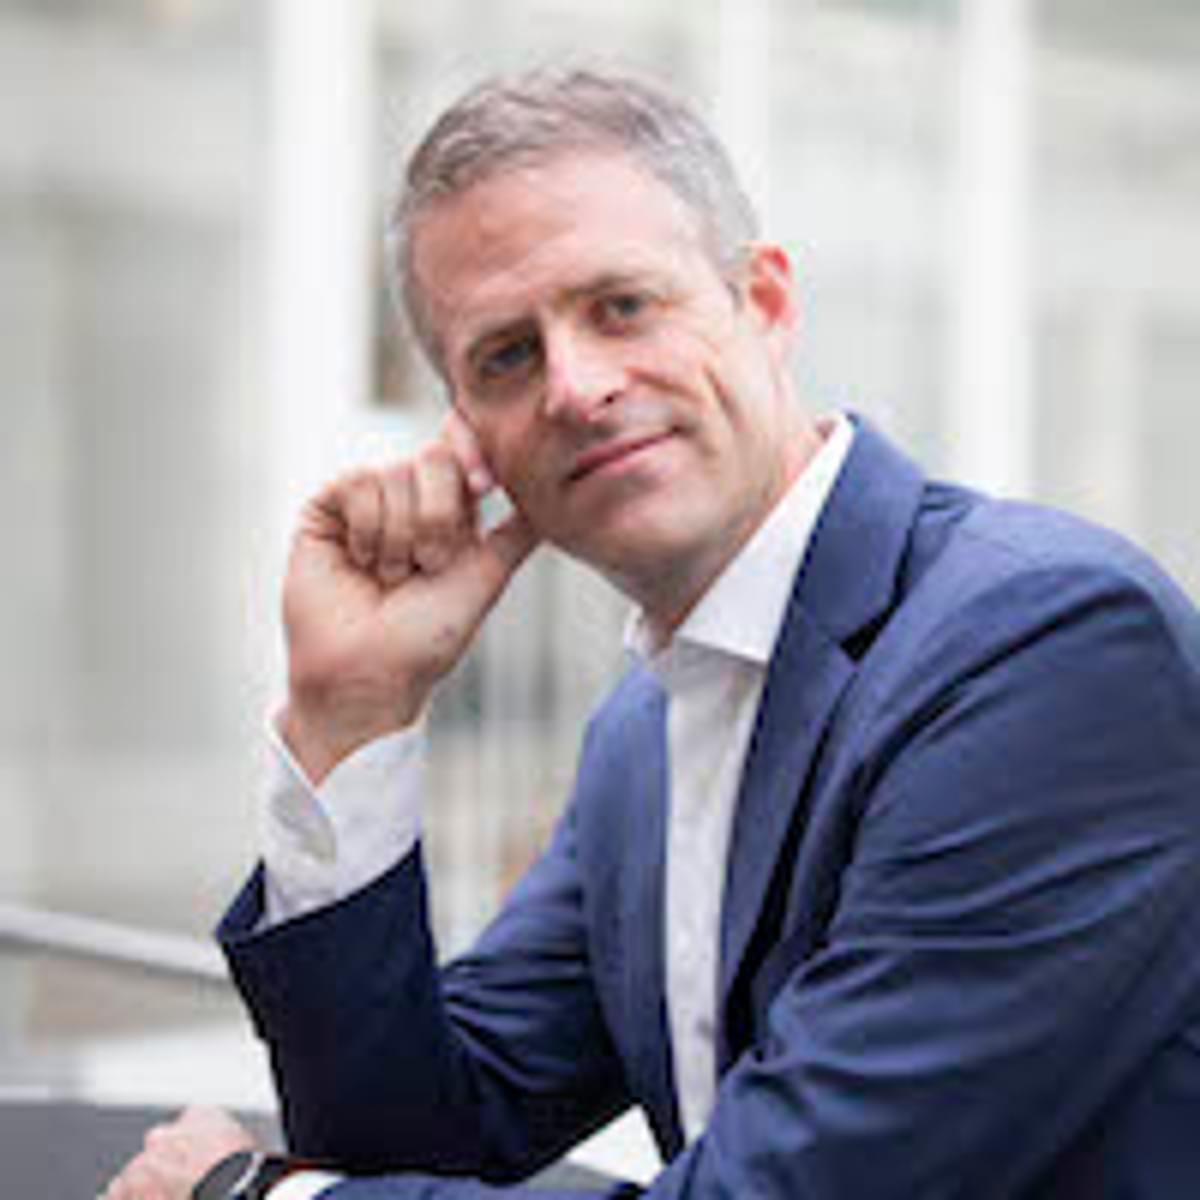 John Reynders benoemd tot Country Director Netherlands bij Visma image